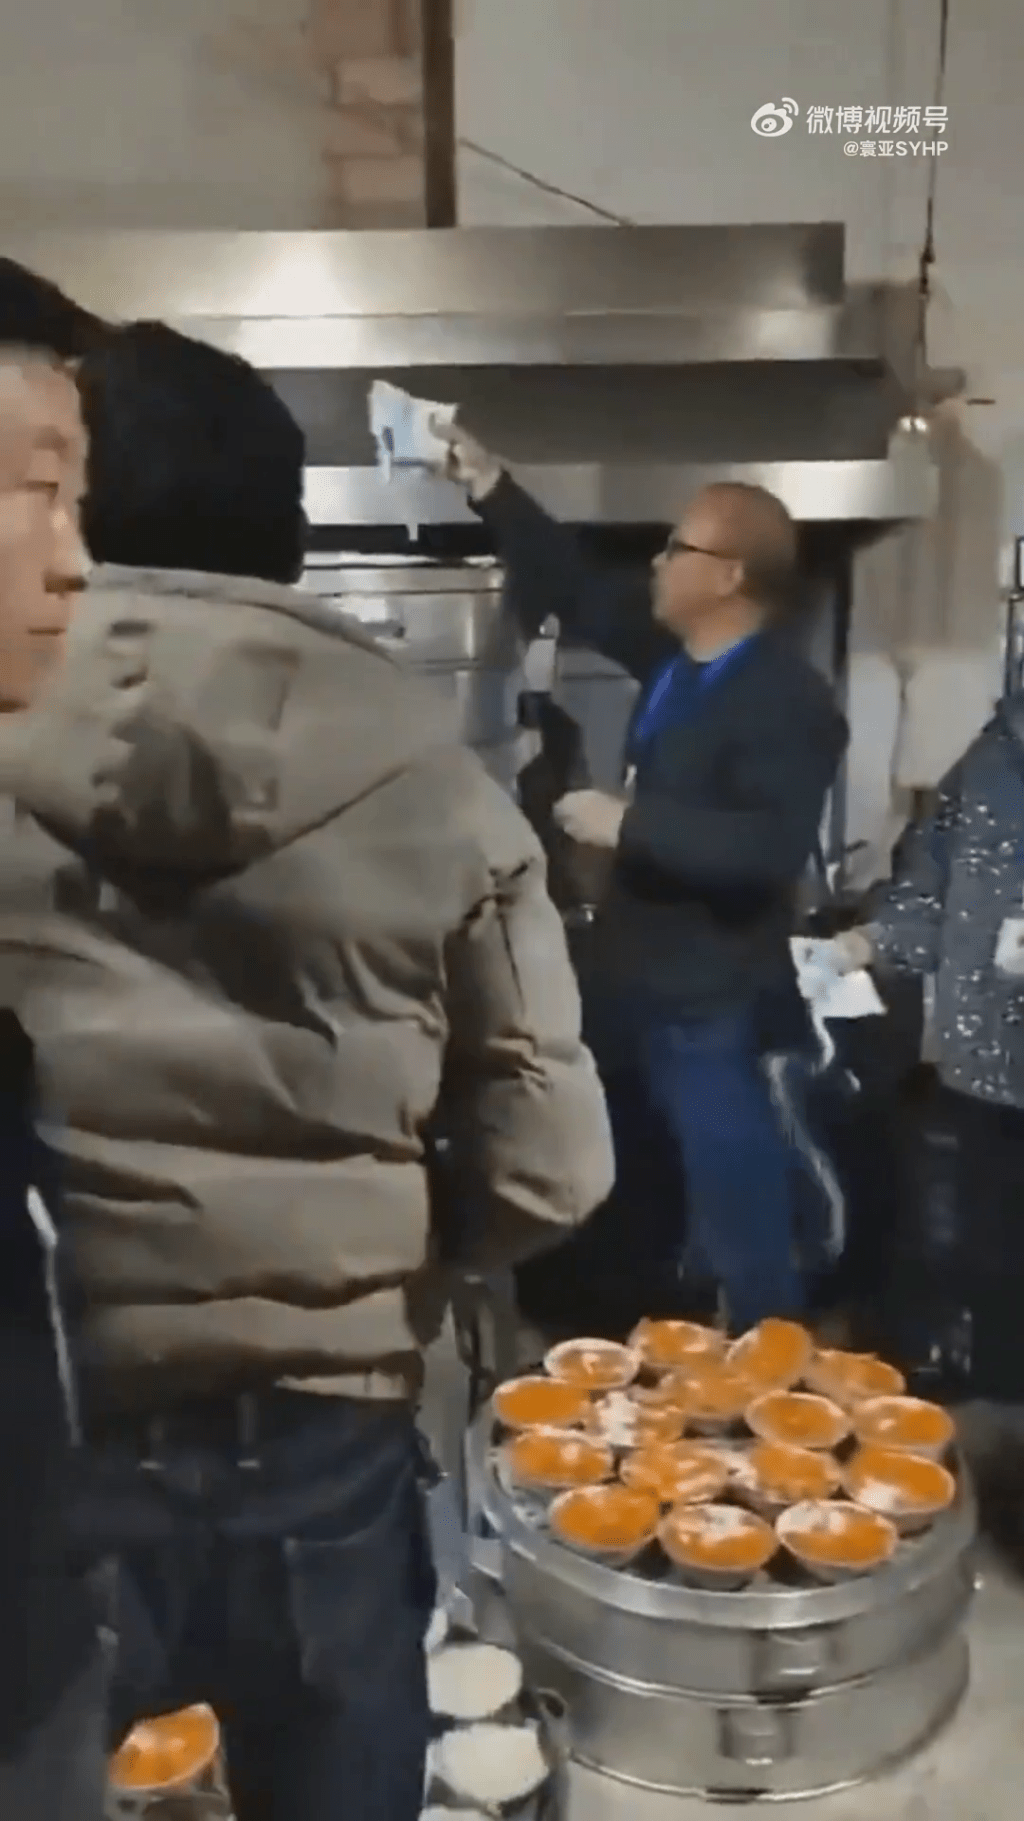 一群挂著工作证的工作人员，直接拿起一袋袋的盐，直接倒入正在烹饪的食物中。